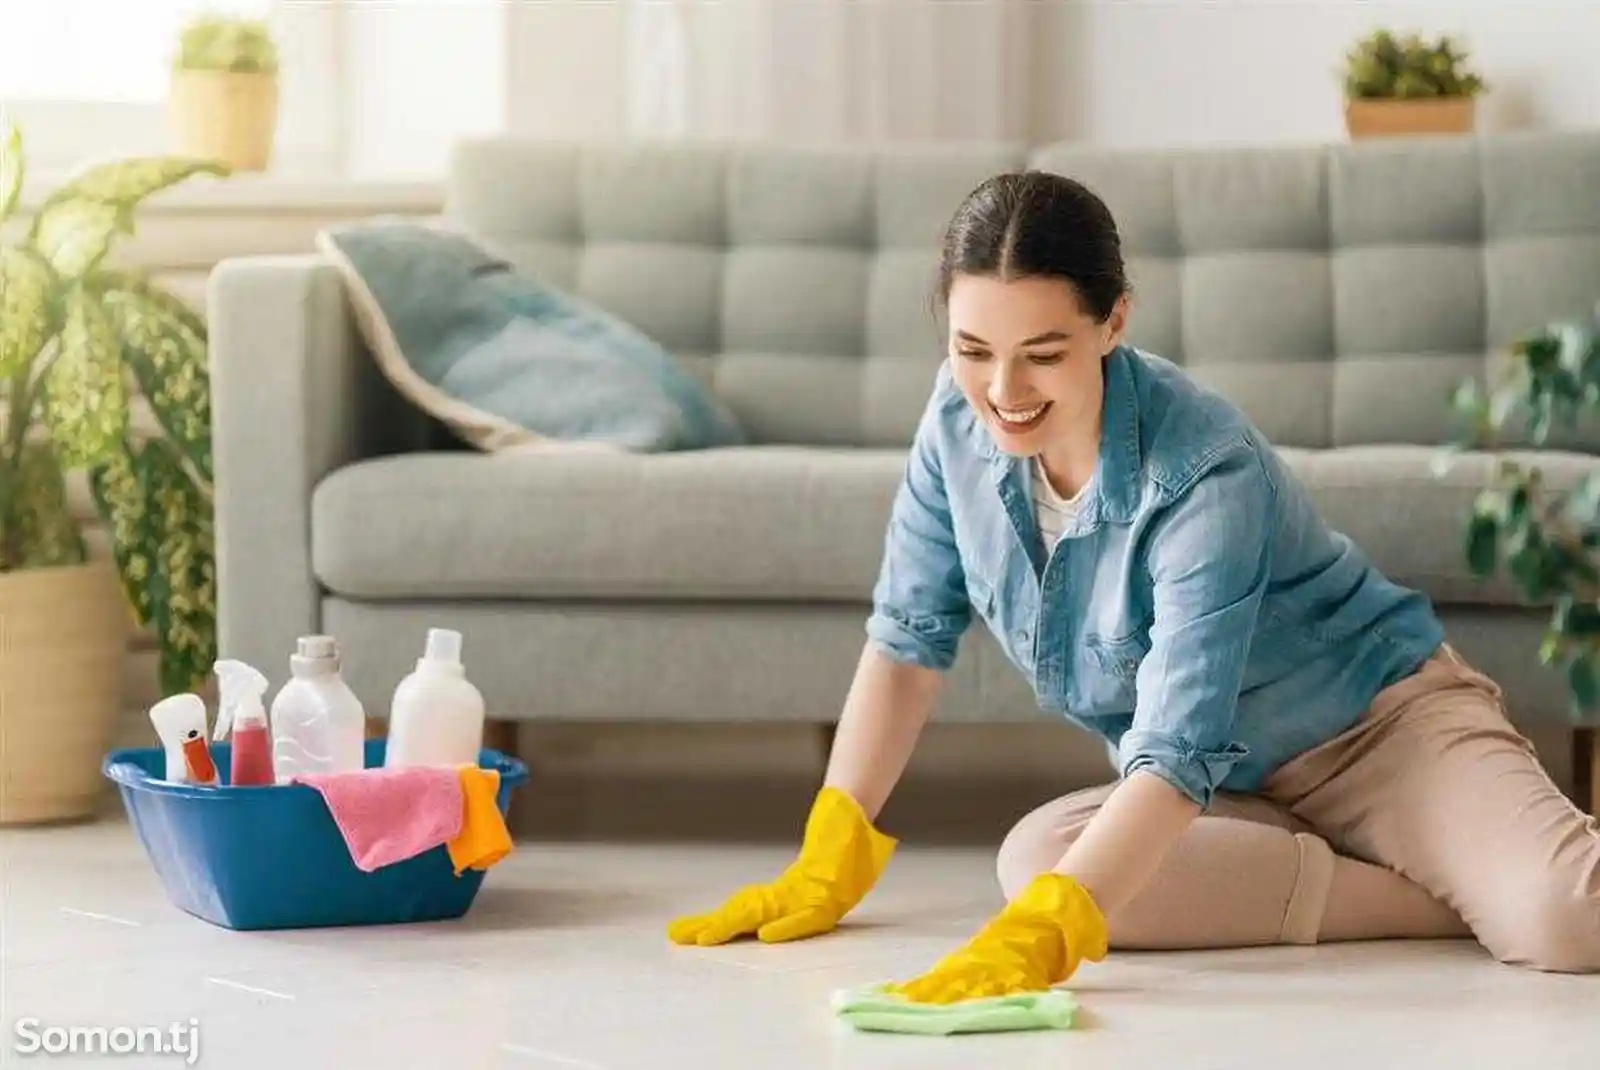 Уборка и чистка домов